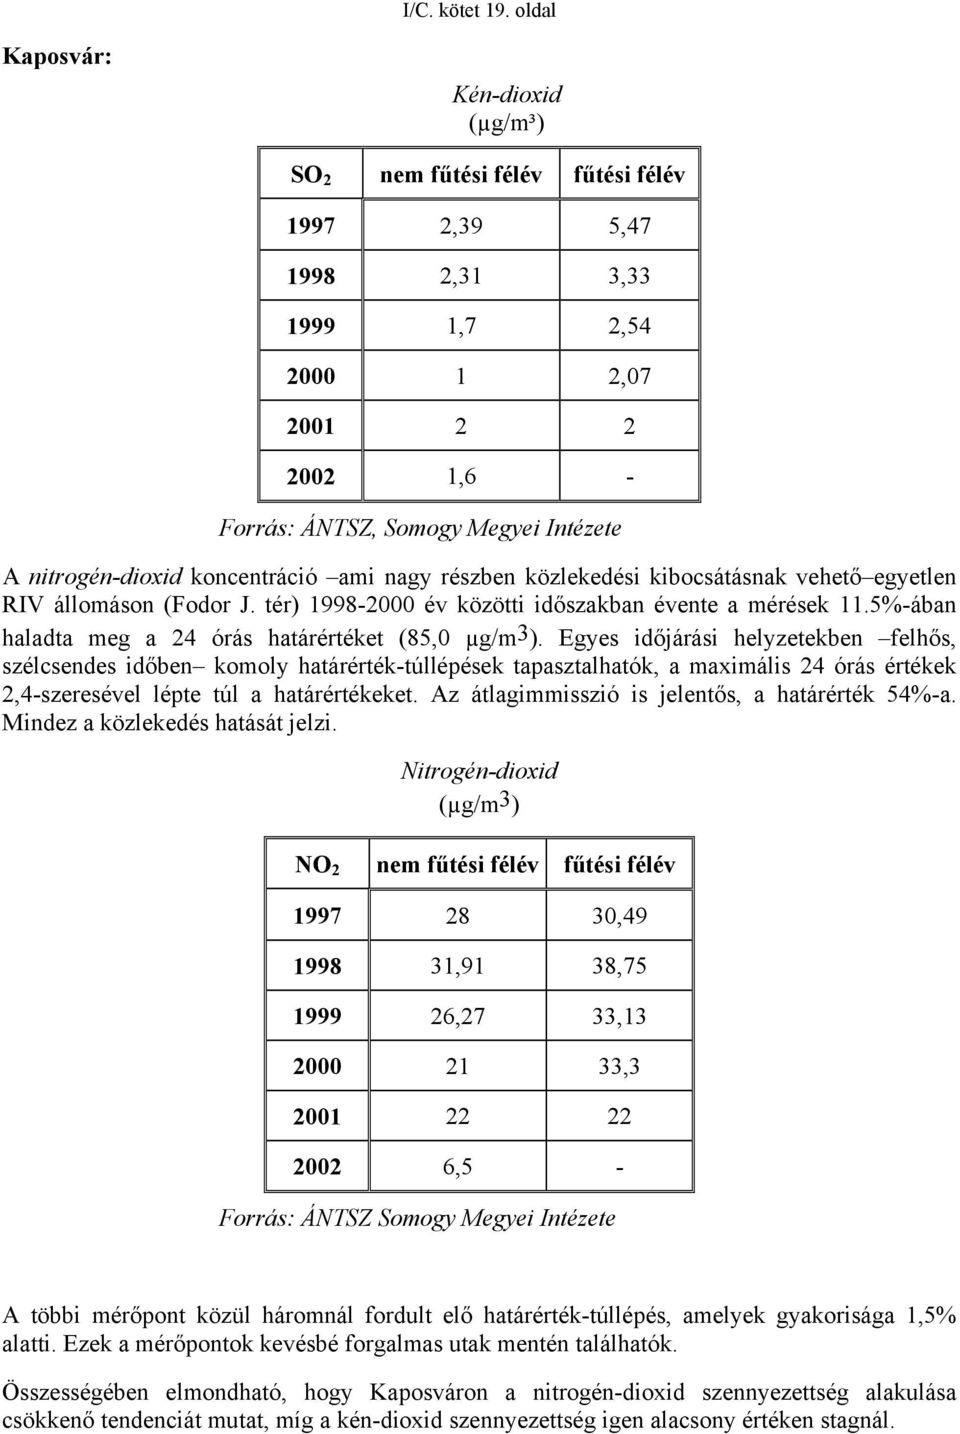 nitrogén-dioxid koncentráció ami nagy részben közlekedési kibocsátásnak vehető egyetlen RIV állomáson (Fodor J. tér) 1998-2000 év közötti időszakban évente a mérések 11.